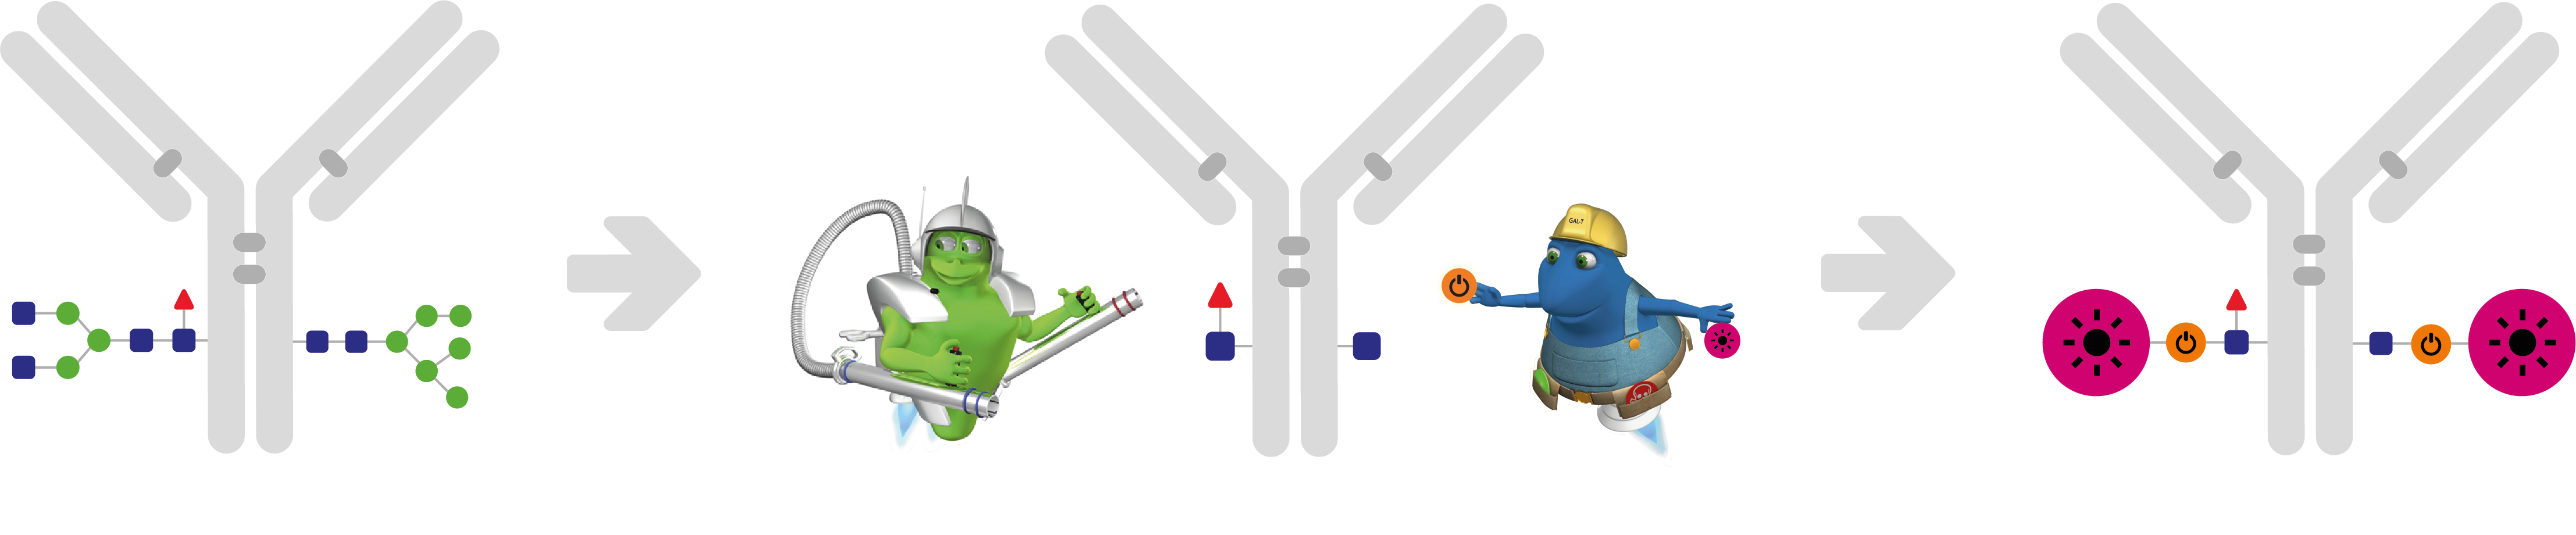 GlyCLICK workflow - Flow Cytometry